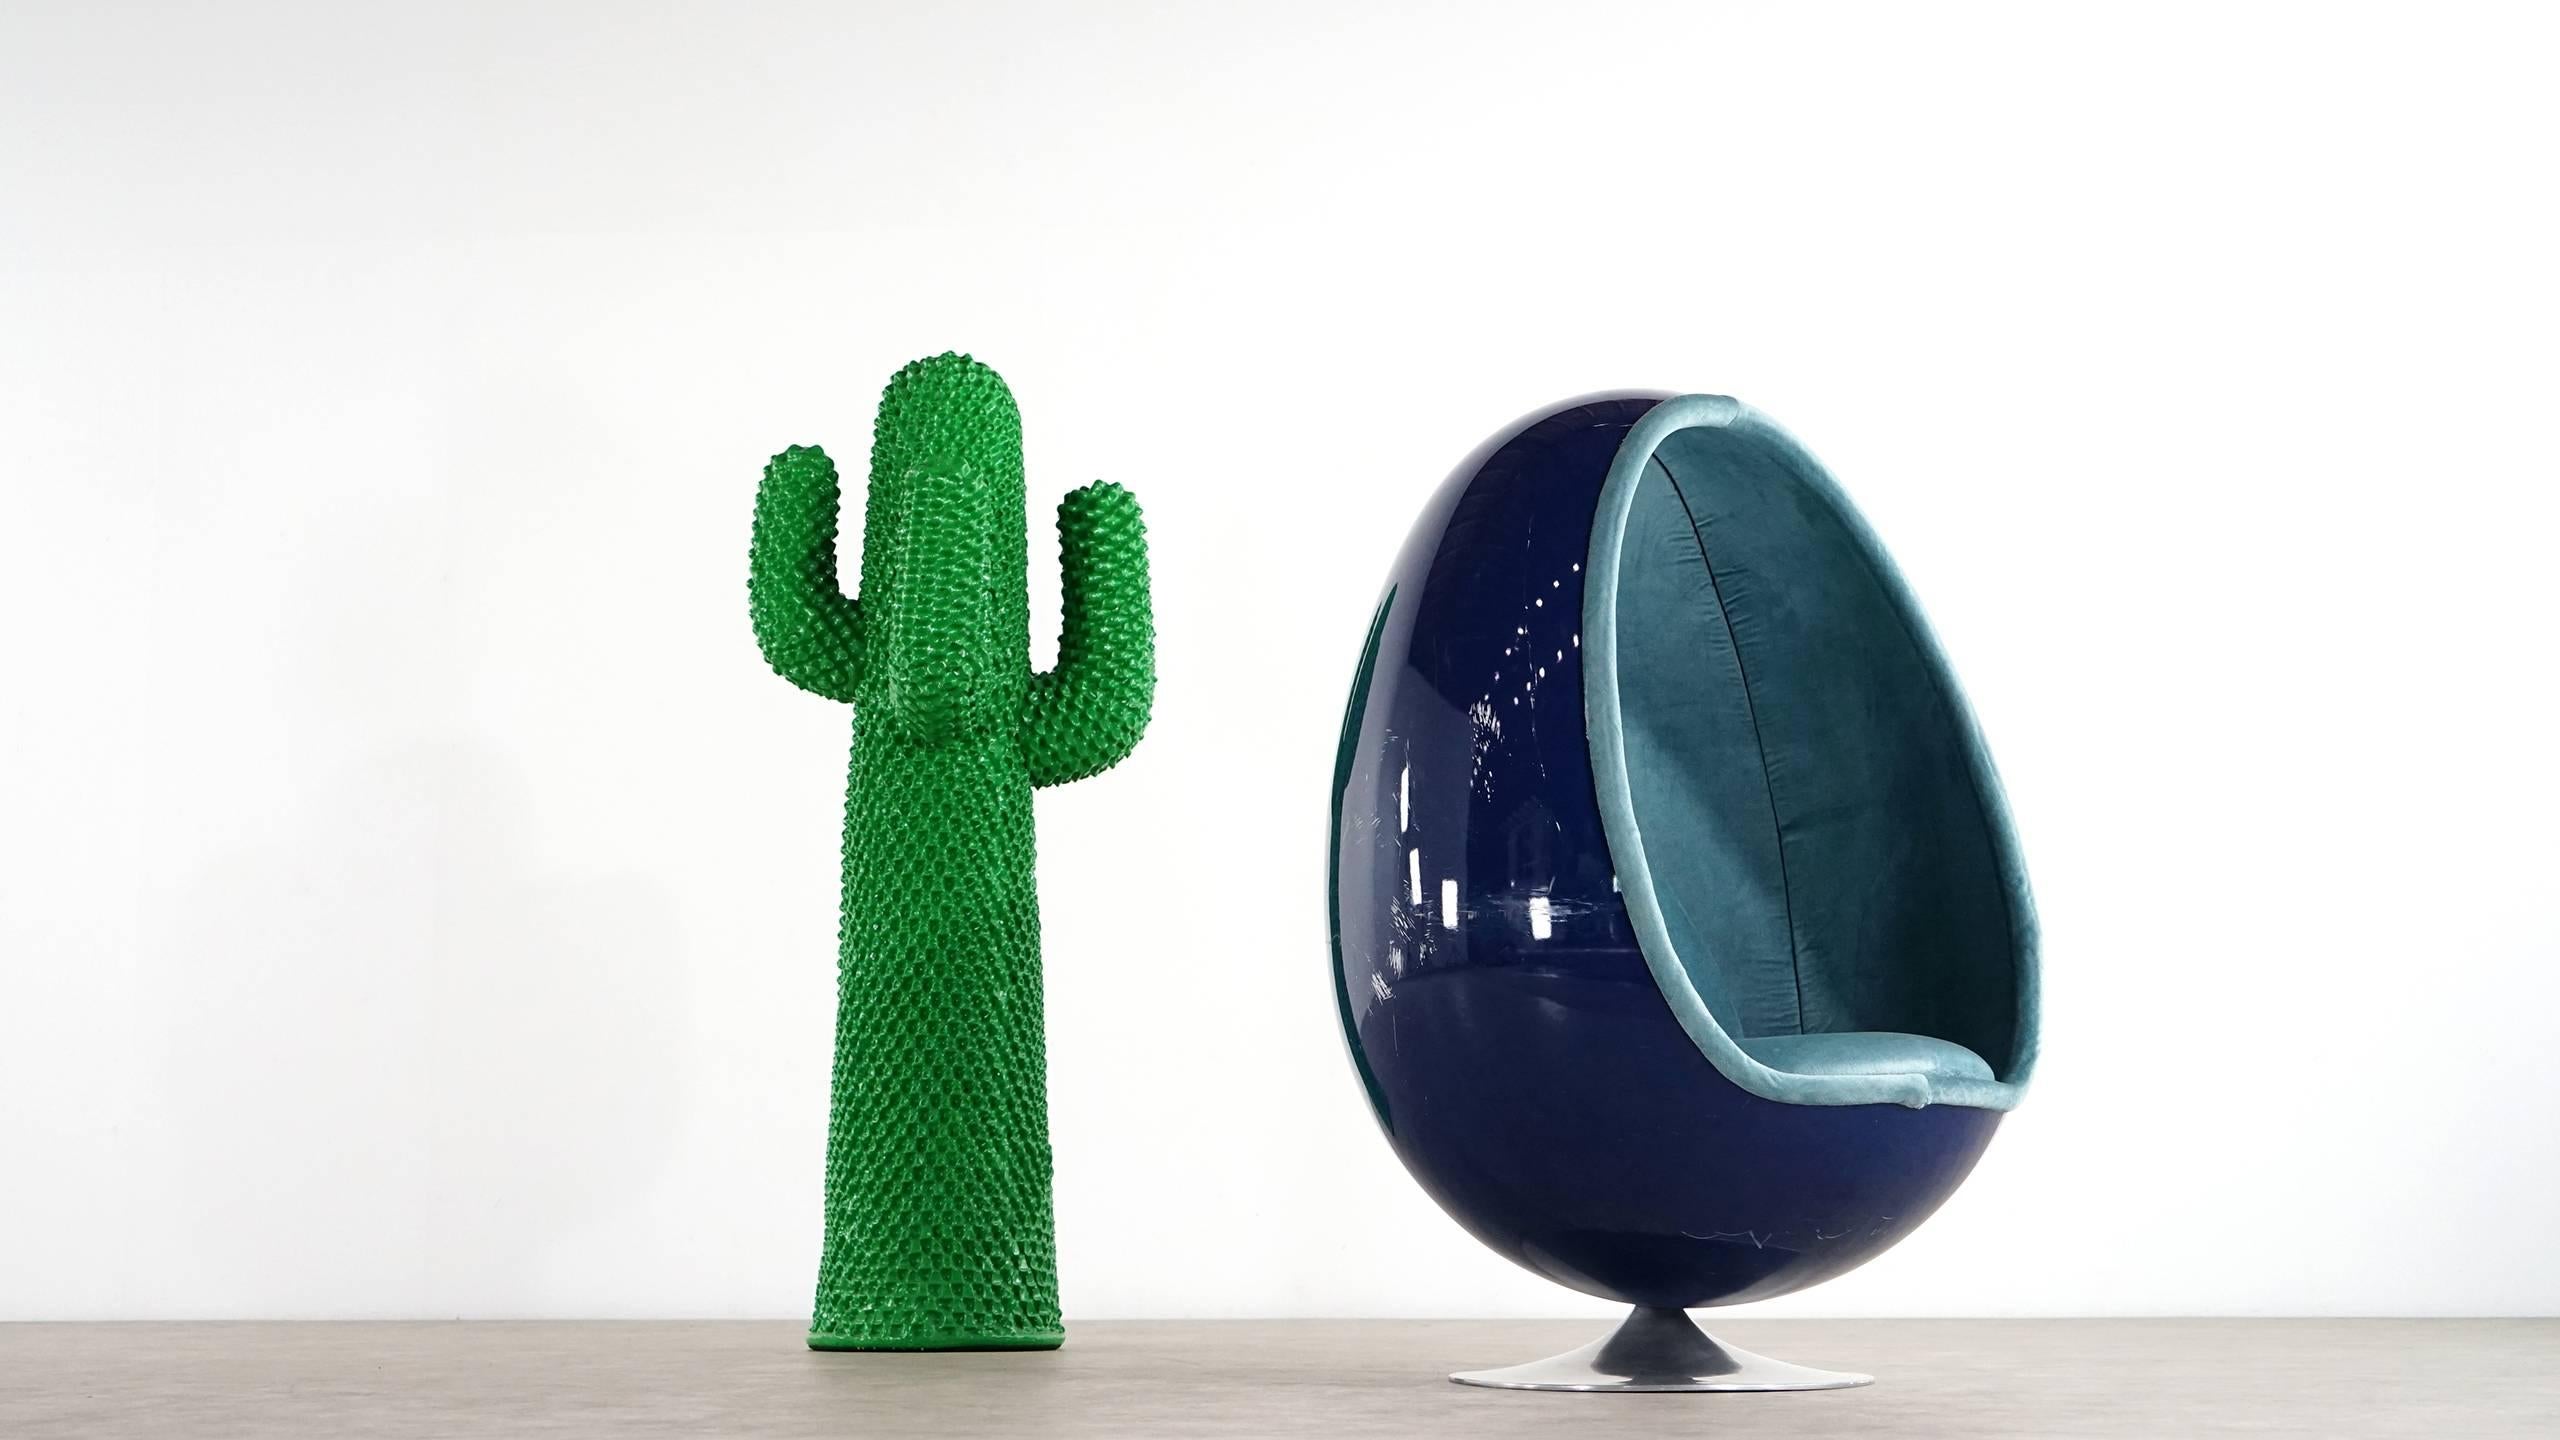 Erstaunlicher Ovalia Egg Stuhl:: entworfen in den späten 1960er Jahren von Henrik Thor-Larsen. Der Stuhl ist original gepolstert. Der Sockel ist aus Aluminium und die Schale ist aus blau beschichtetem Glasfasergewebe mit einigen Kratzern.